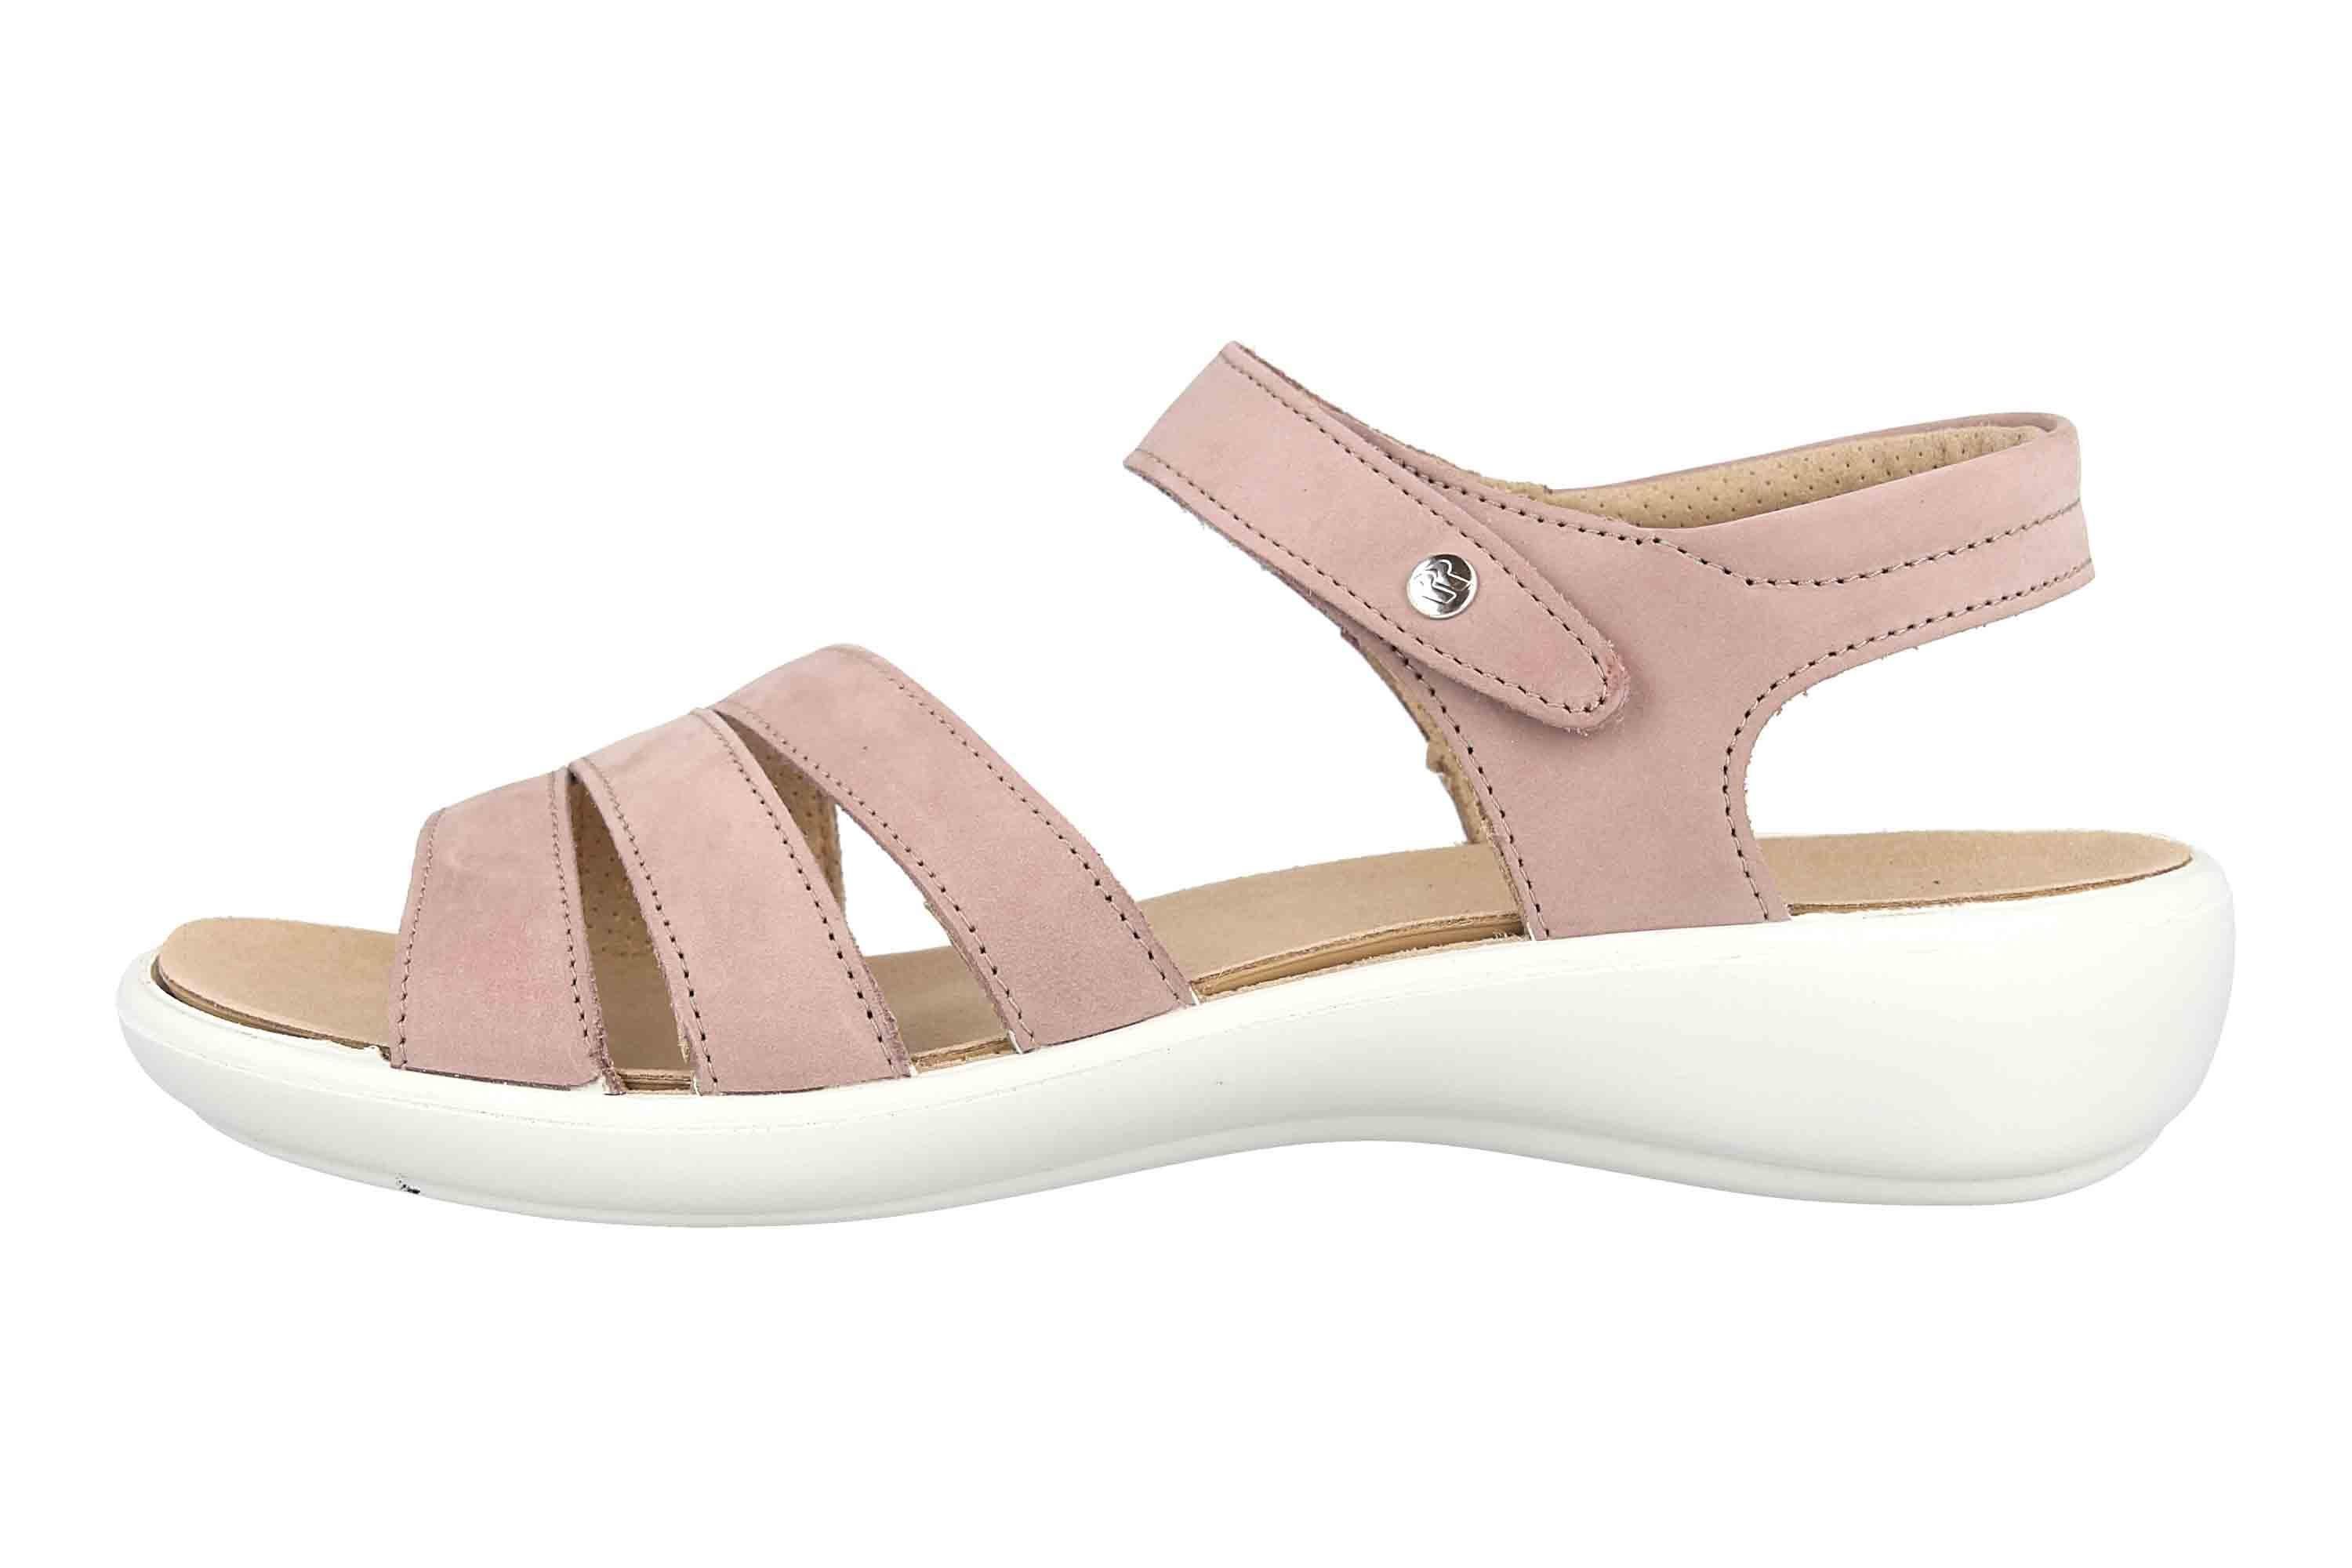 Romika »Ibiza 111 Sandalen in Übergrößen Rose« Sandale online kaufen | OTTO